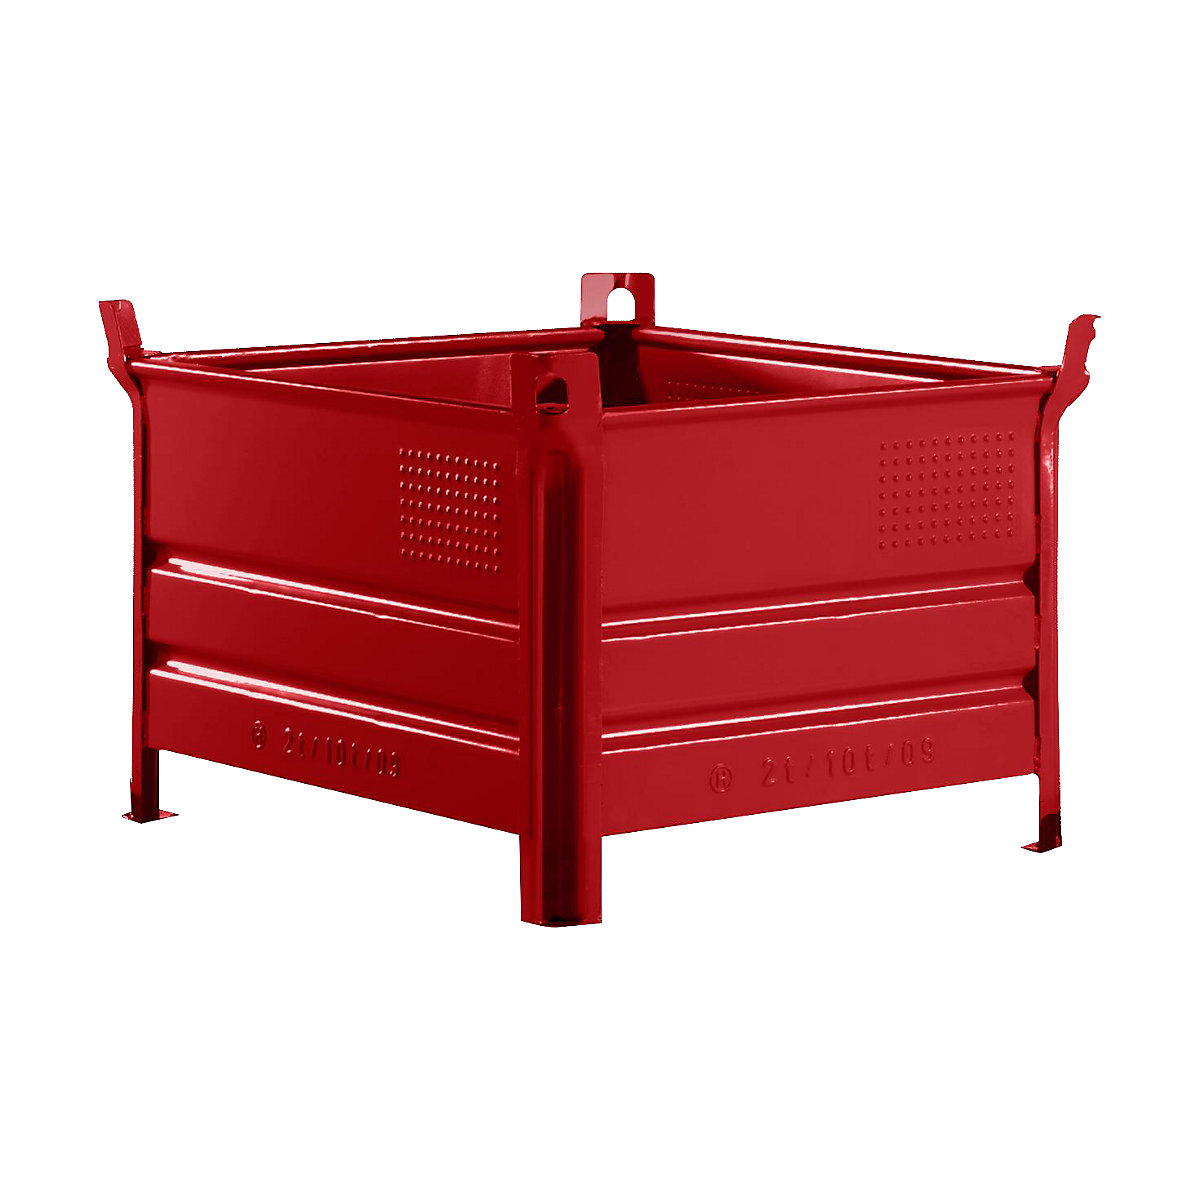 Teli falú rakásolható tároló – Heson, szé x h 800 x 1000 mm, teherbírás 1000 kg, piros, 5 db-tól-7